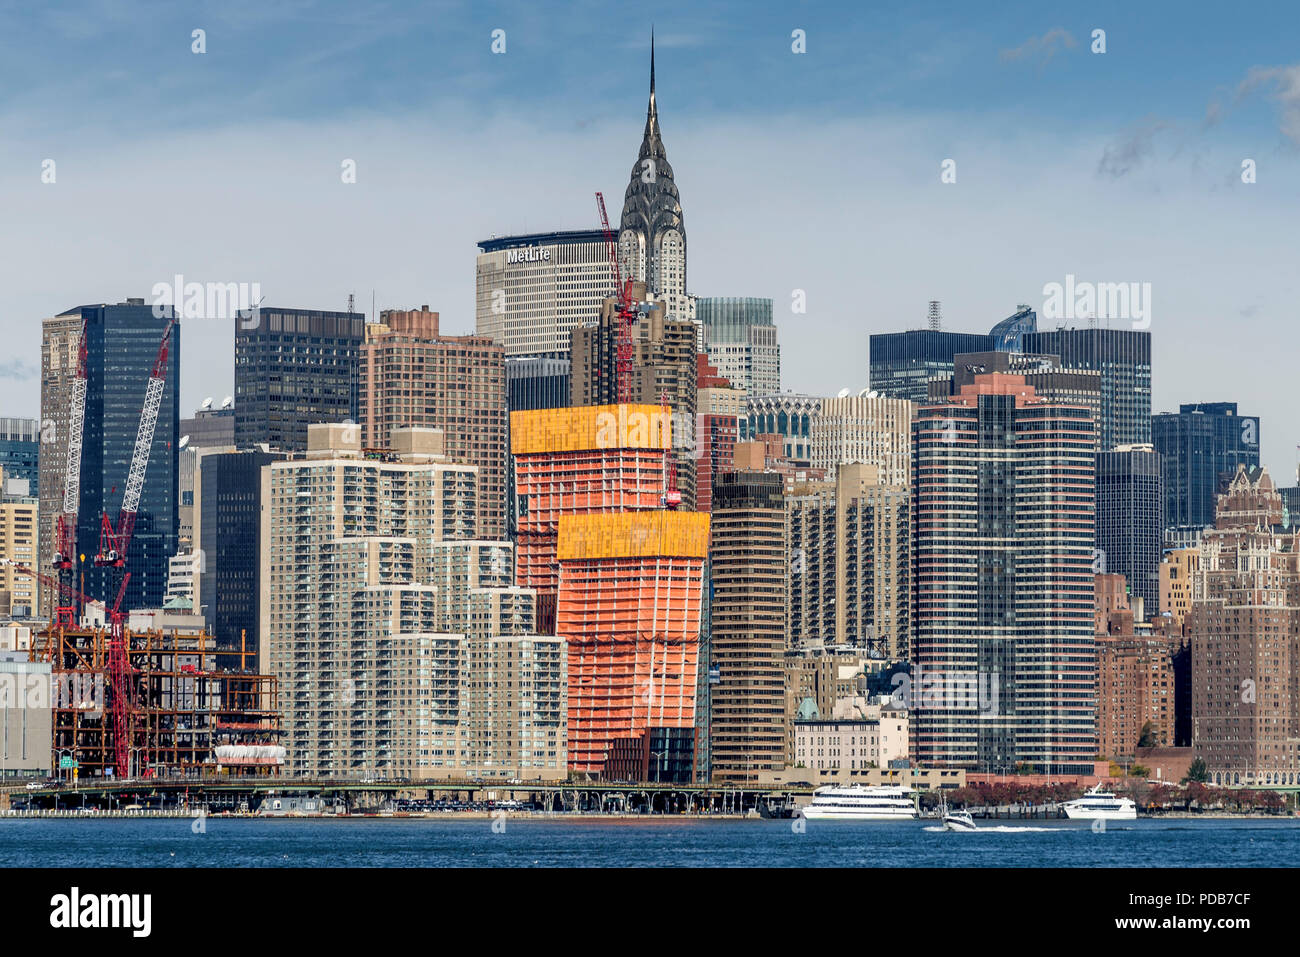 29-10-15, New York, Stati Uniti d'America. I lavori di costruzione a Manhattan come si vede dall'East River Ferry Pier a Greenpoint, Brooklyn. Foto: © Simon Grosset Foto Stock